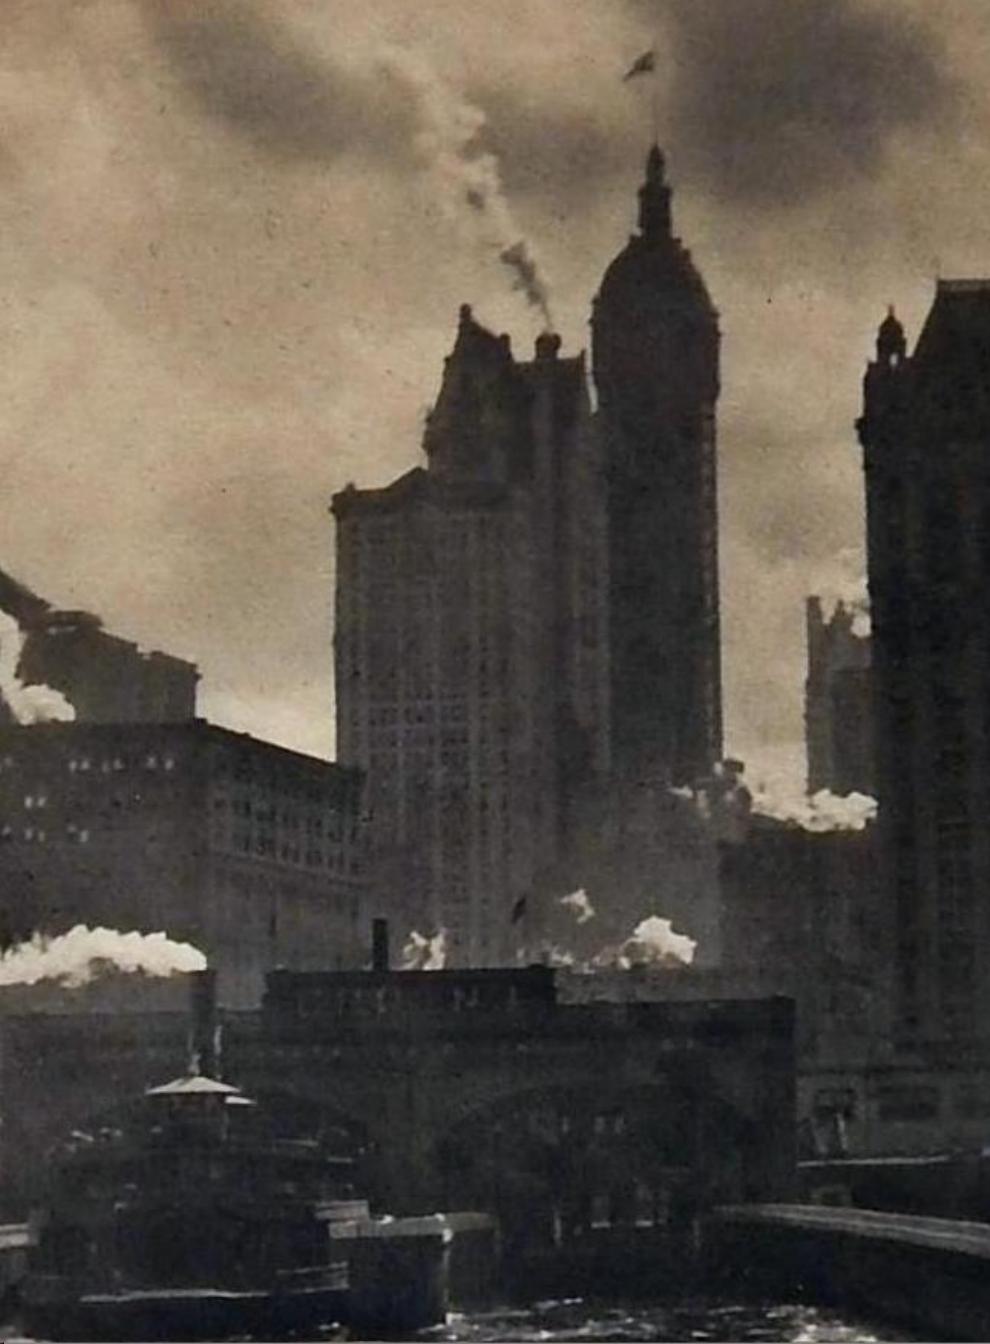 Papier Photogravure ' City of Ambition ' d'Alfred Stieglitz, 1910, image de New York en vente